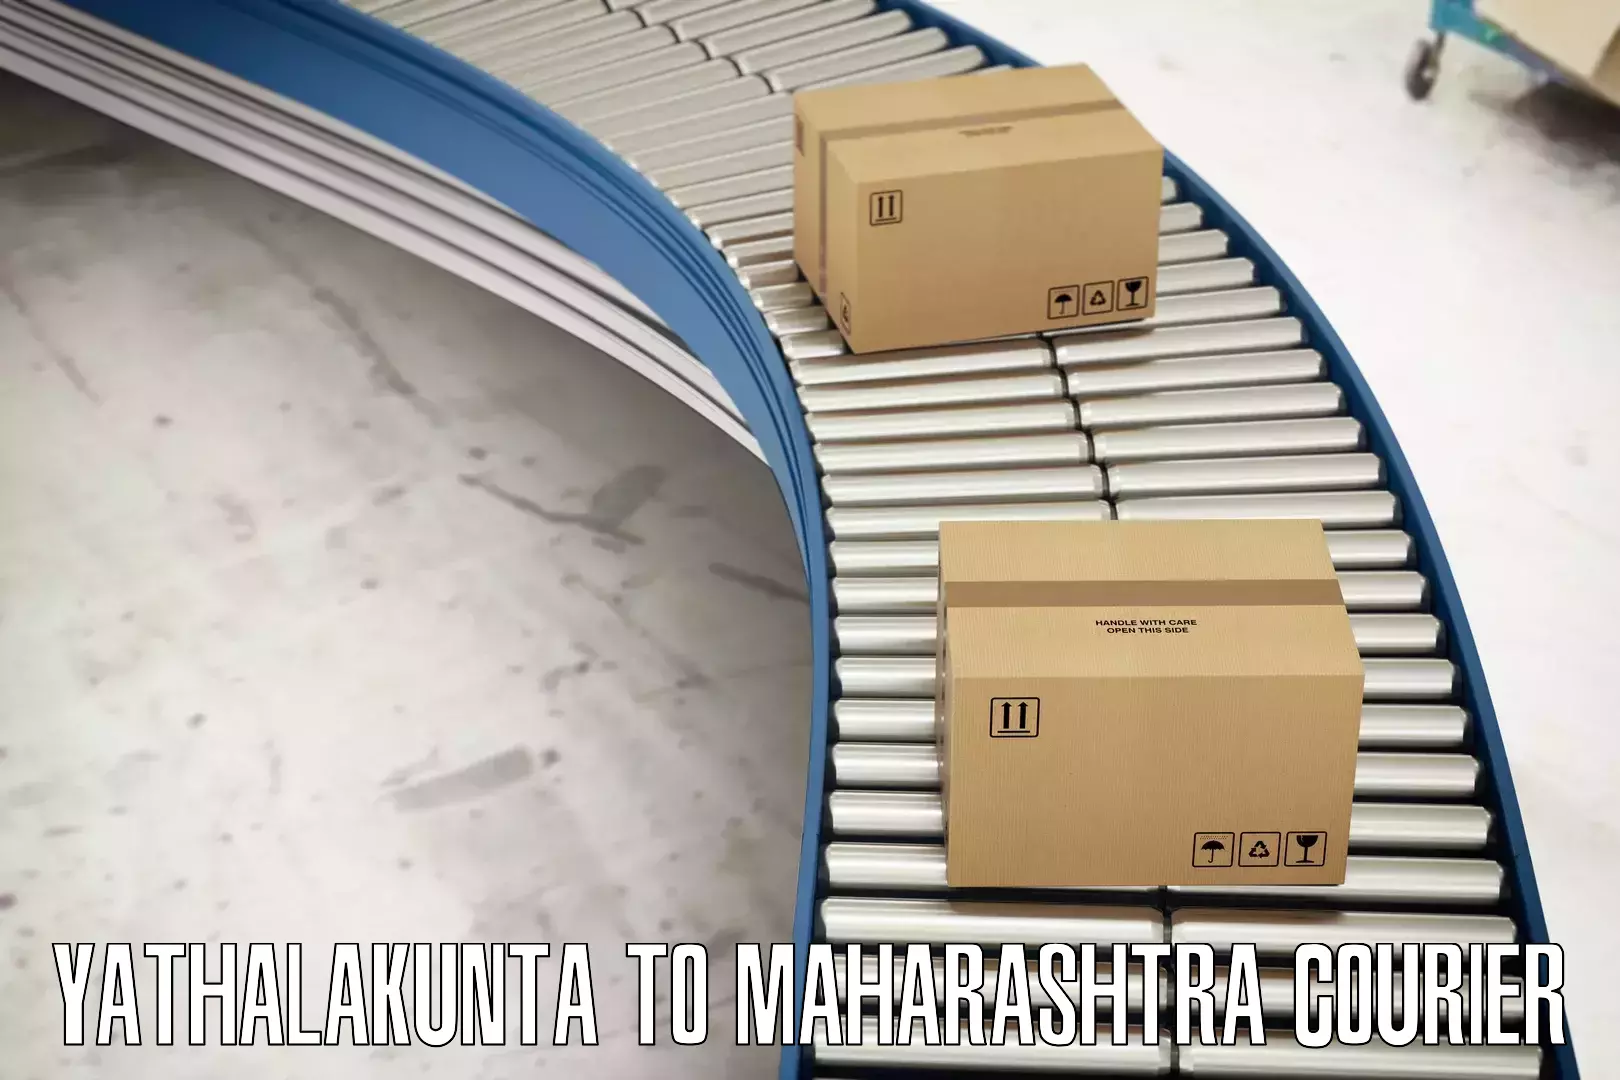 Retail shipping solutions Yathalakunta to Karanja